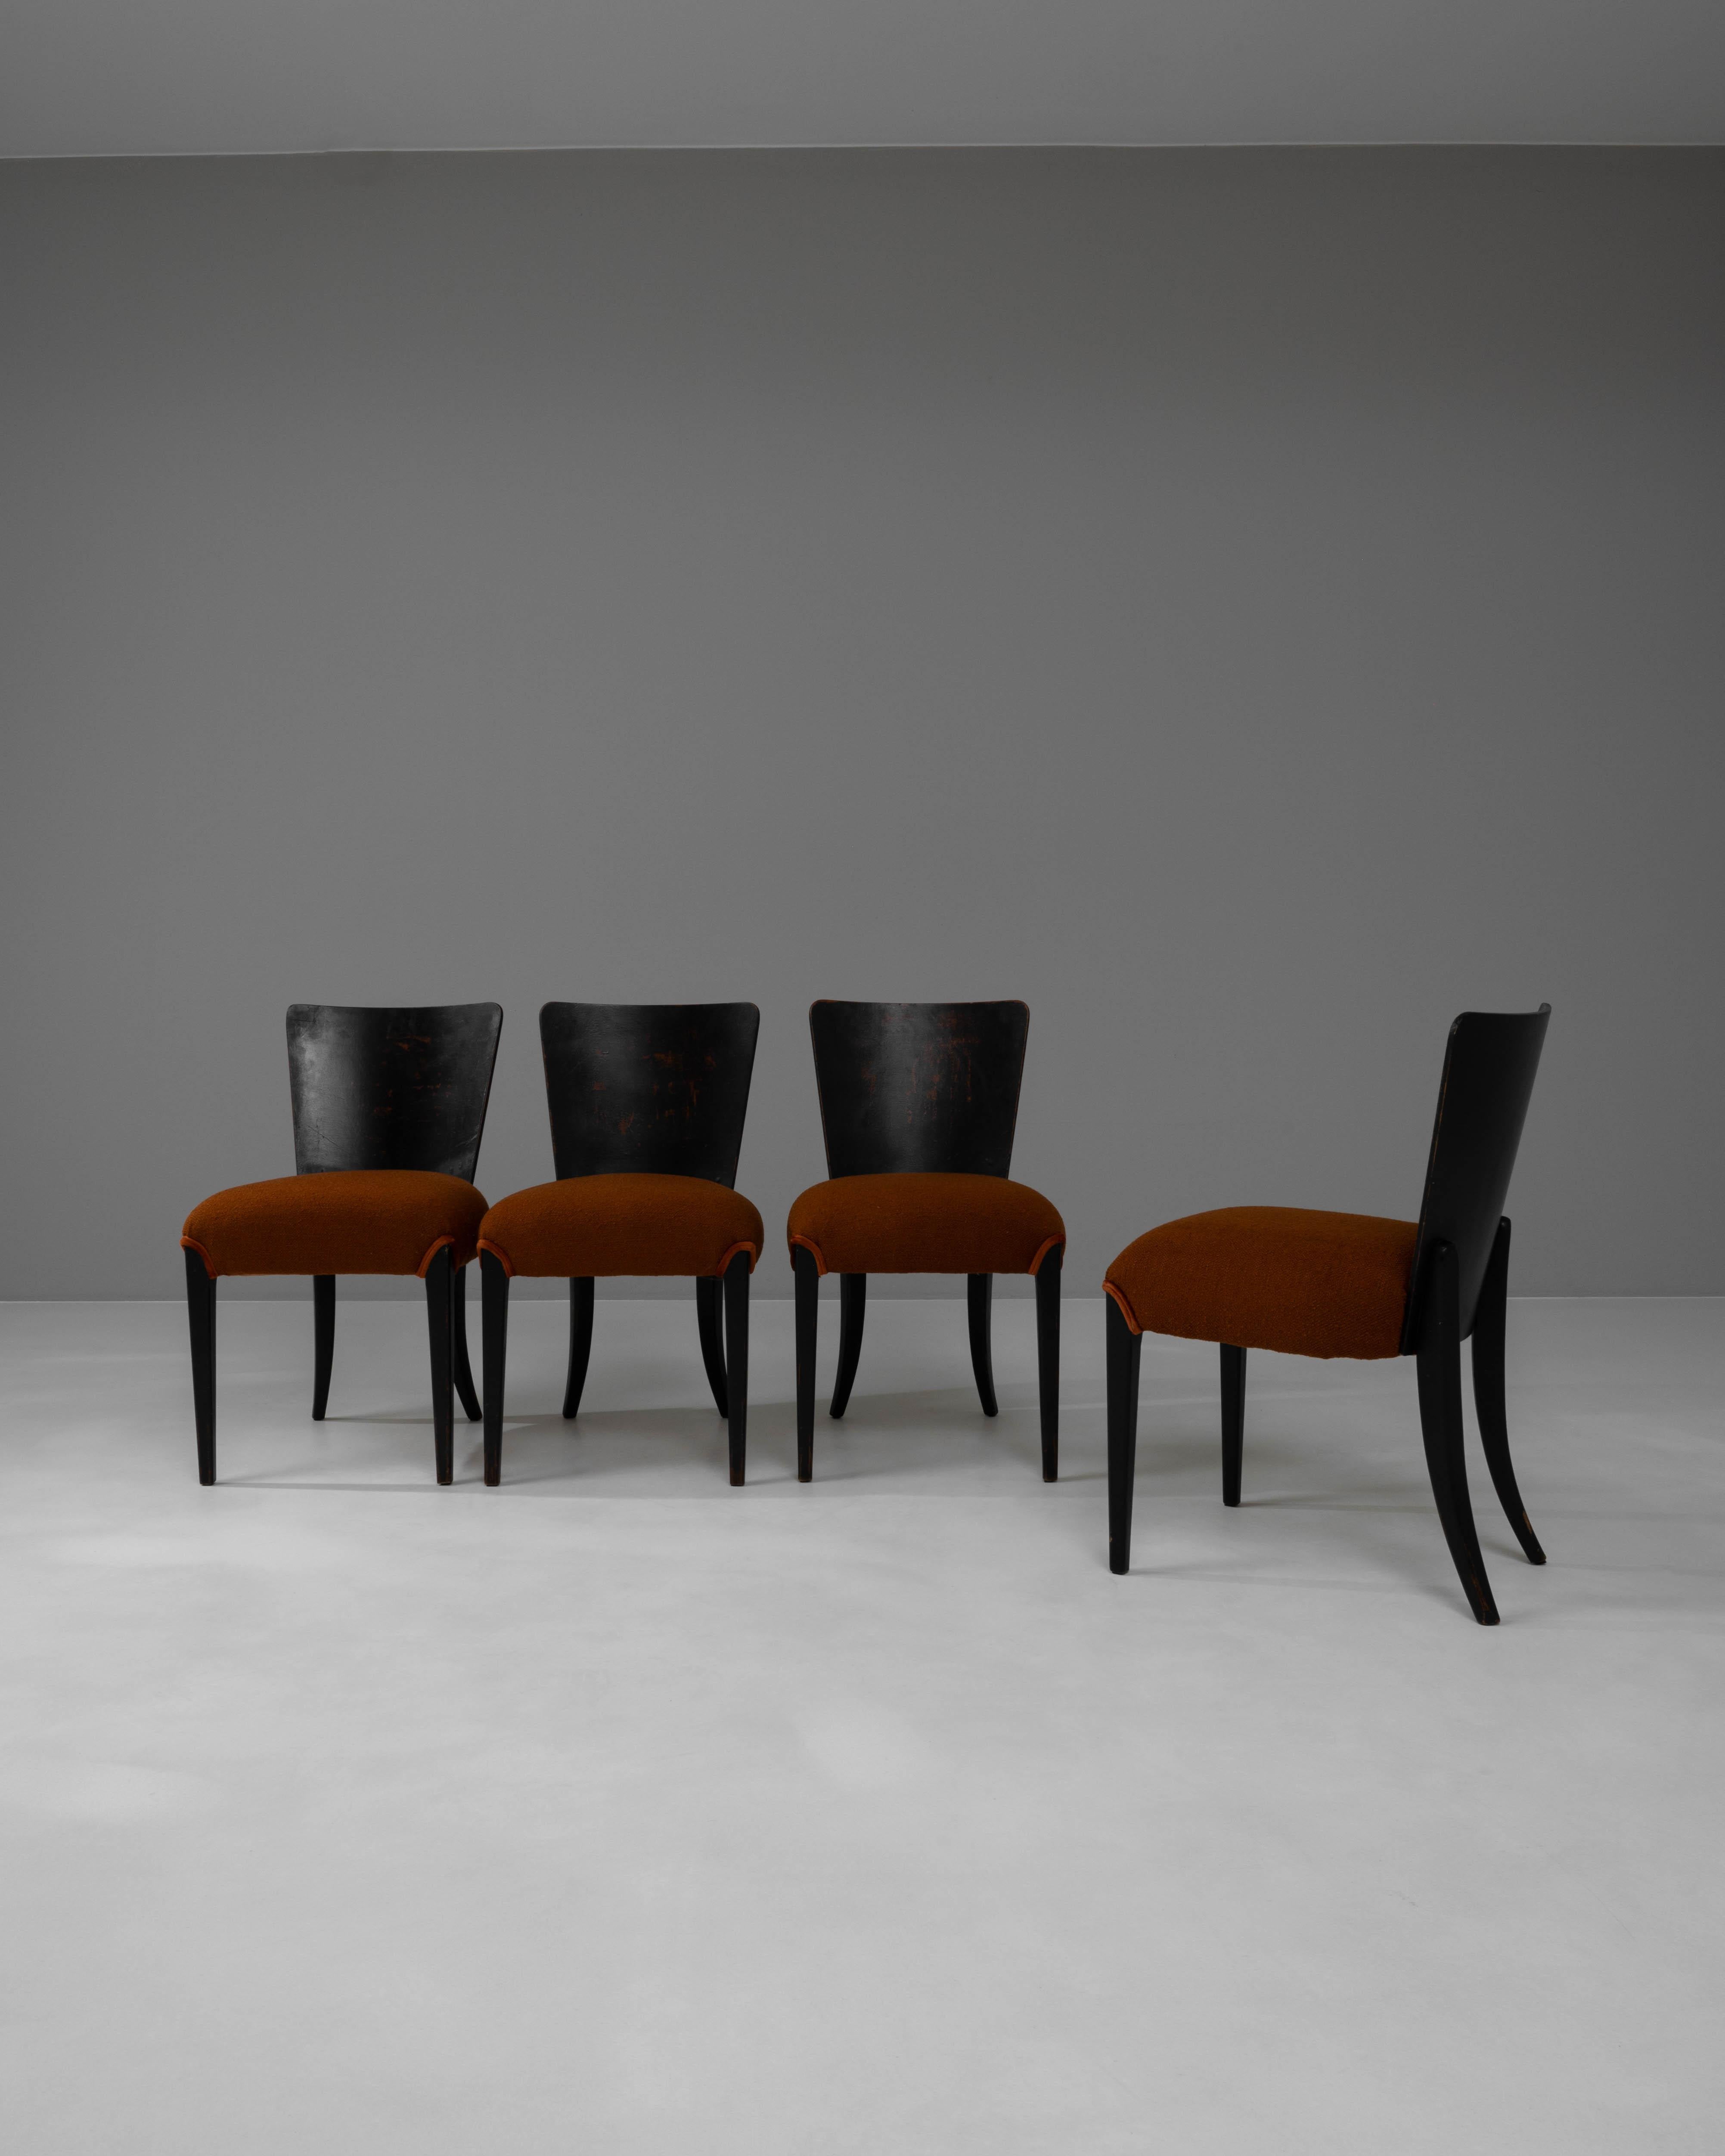 Peppen Sie Ihr Esszimmer mit diesem Set aus vier markanten tschechischen Holzstühlen des 20. Jahrhunderts auf, die von J. Halabala meisterhaft entworfen wurden. Die Stühle von Halabala sind für ihren innovativen Designansatz bekannt und zeichnen